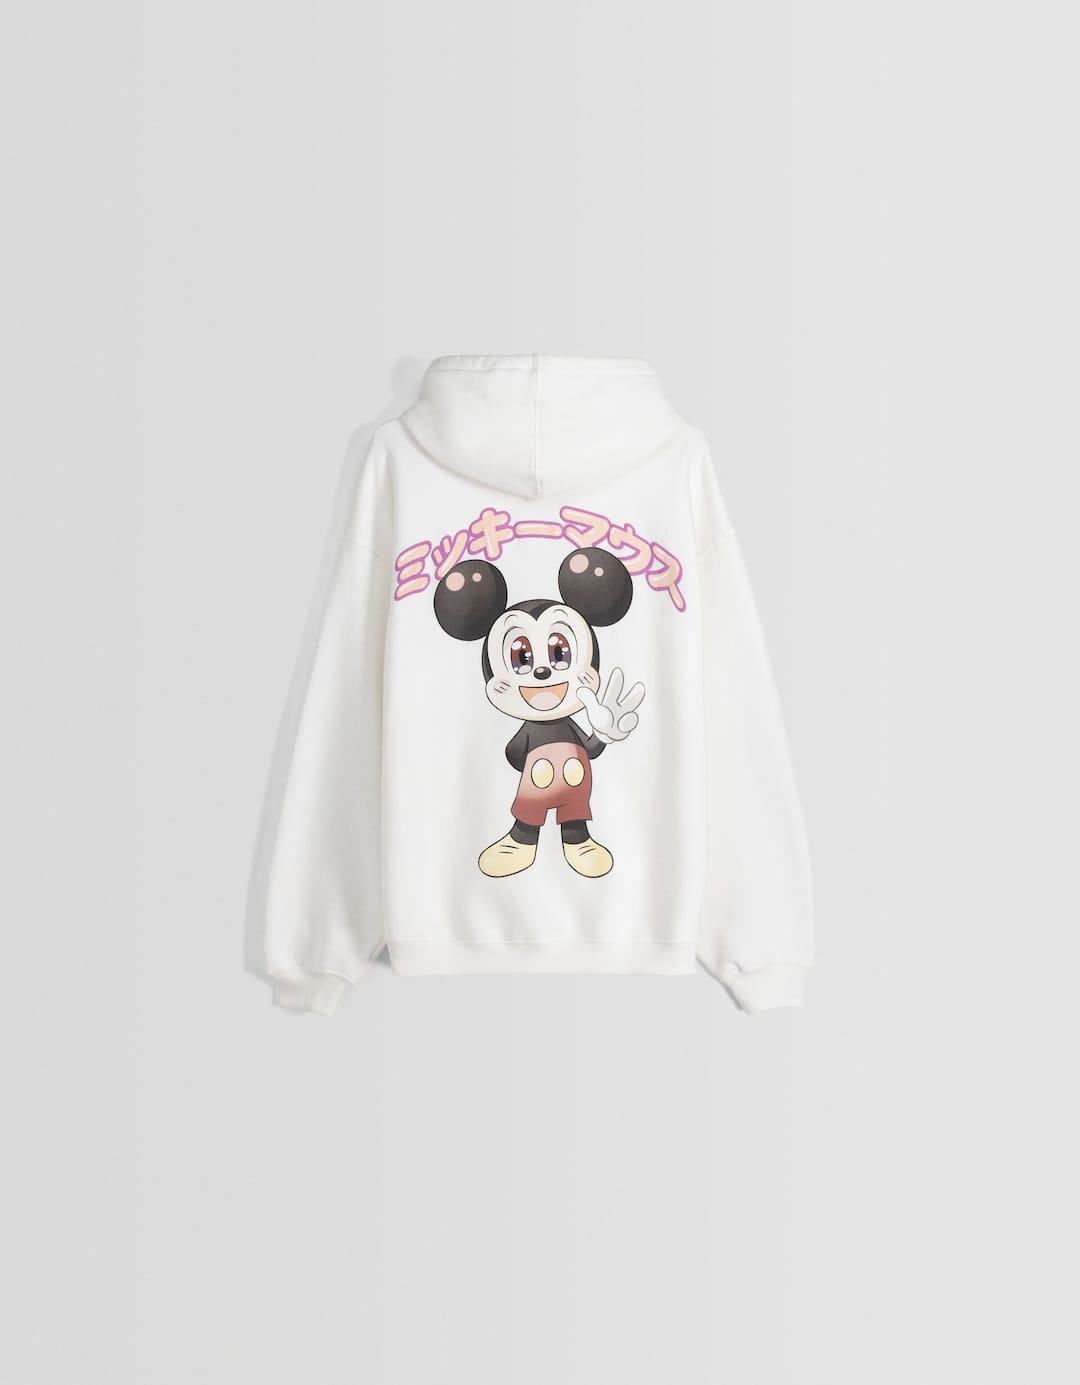 Sweatshirt do Mickey com capuz e estampado